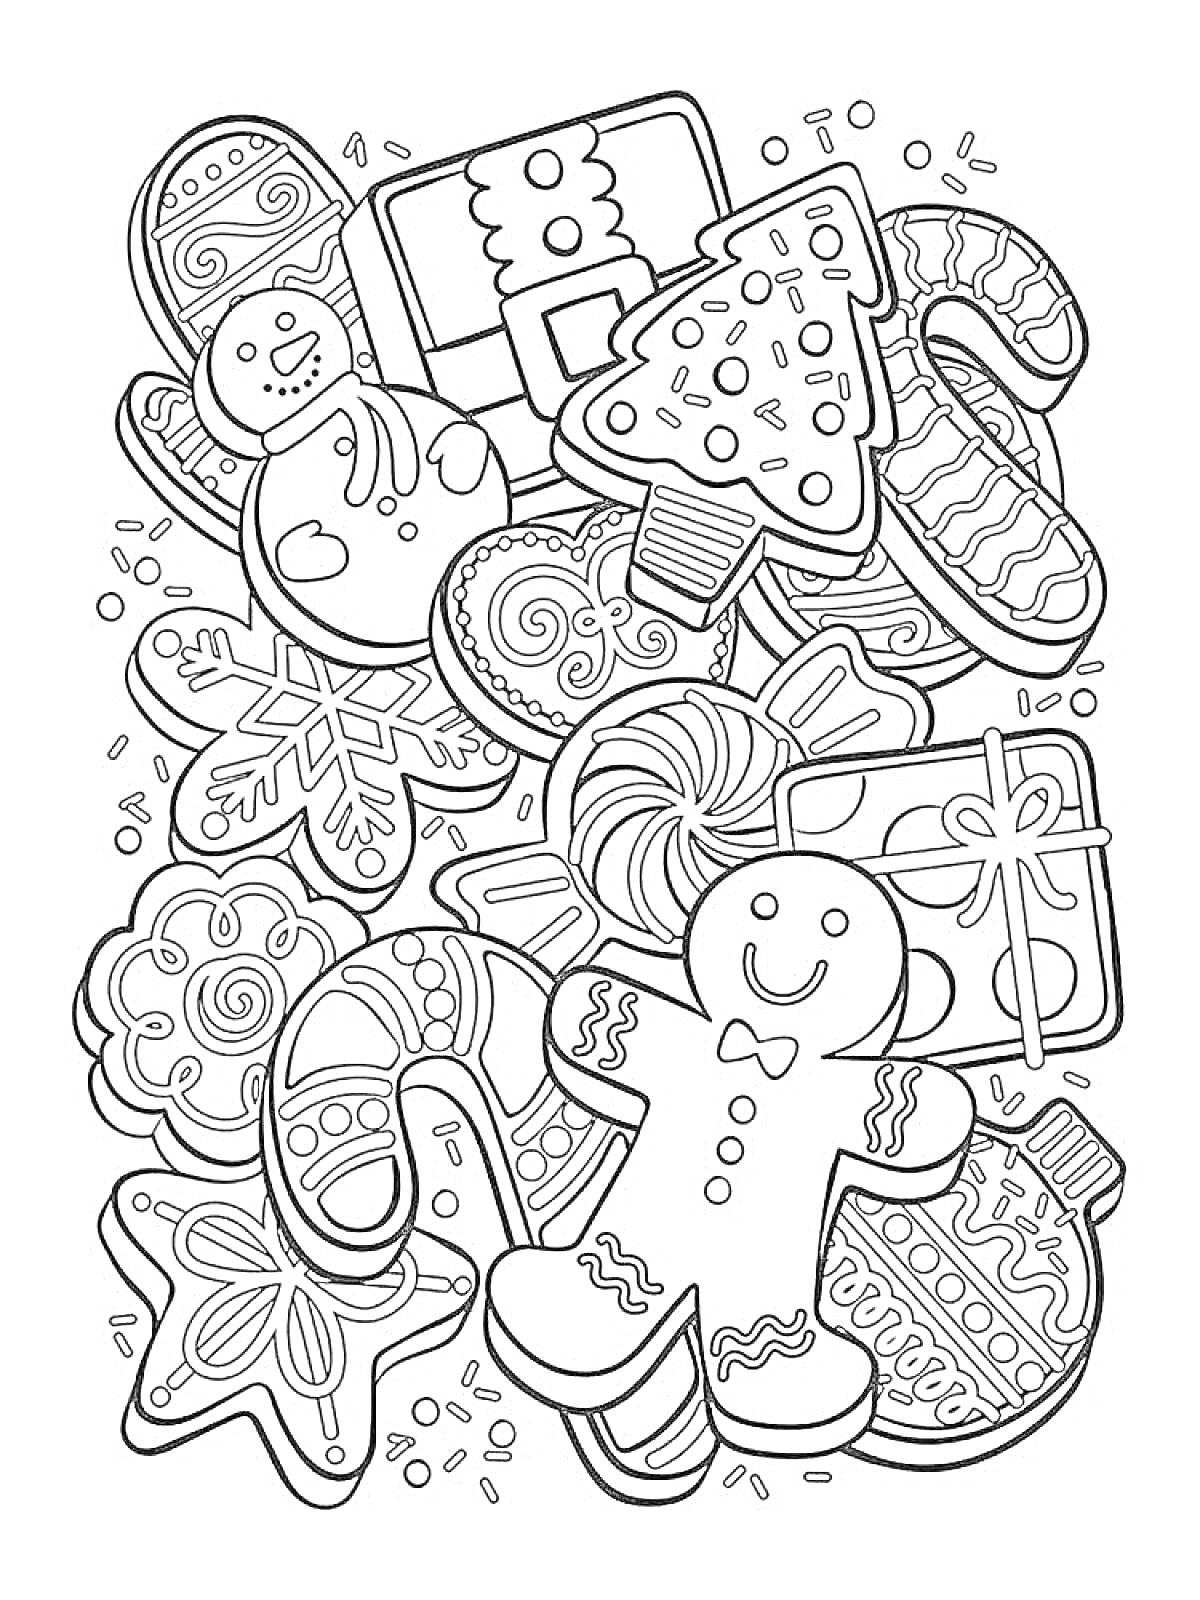 Пряничные фигуры и сладости (пряничные человечки, ёлочки, снежинки, леденцы, звезды, кондитерские изделия)